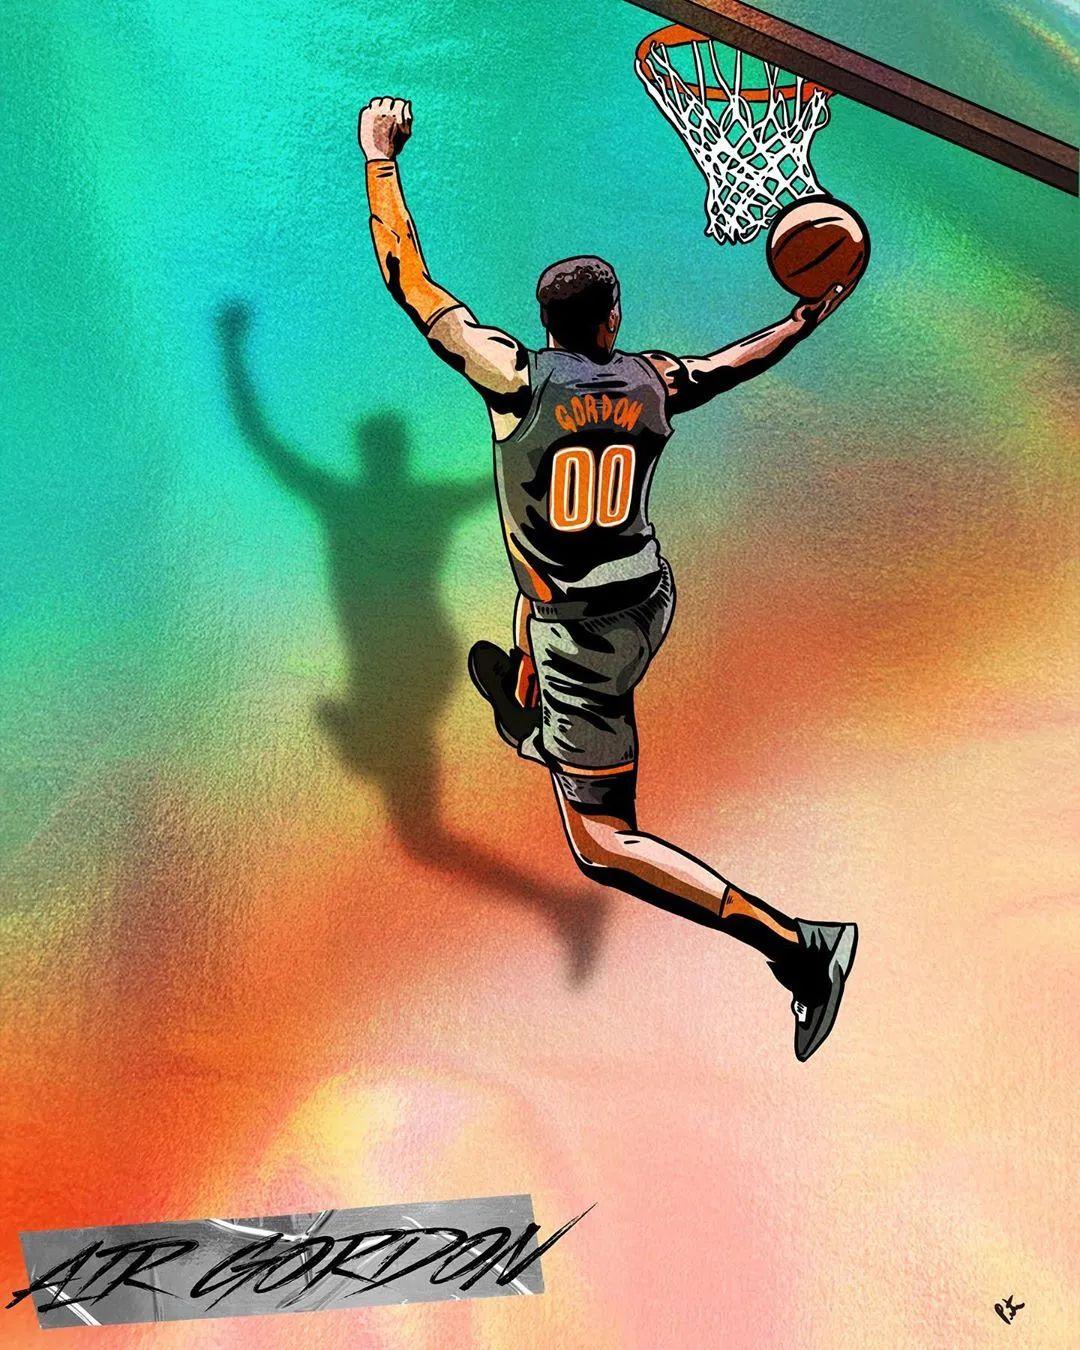 篮球头像素材-篮球头像模板-篮球头像图片免费下载-设图网